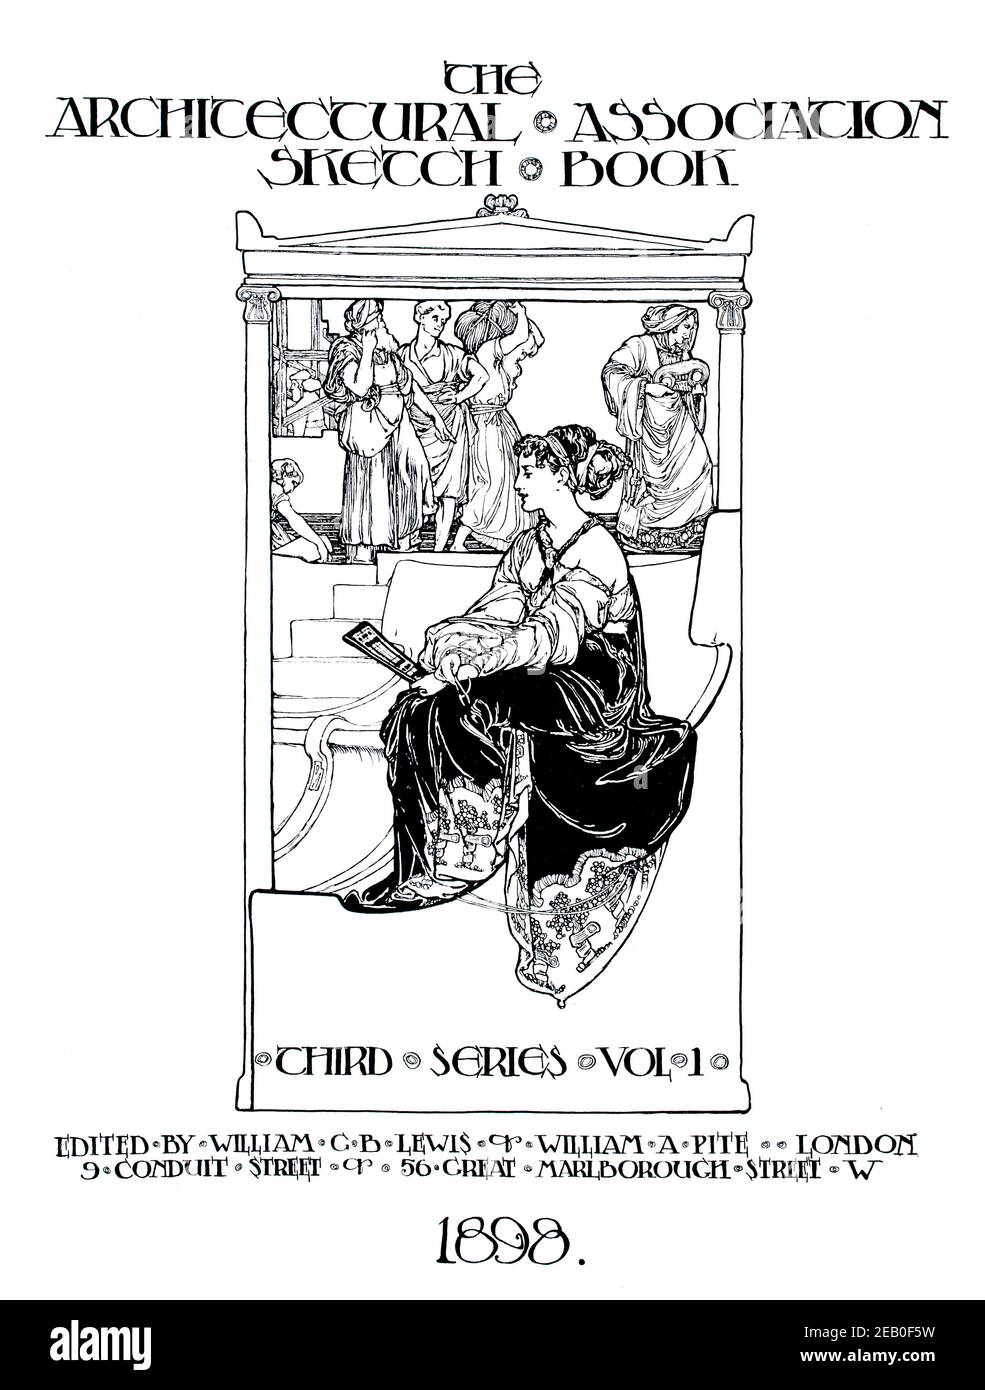 Asociación arquitectónica de dibujo libro, diseño de página de título por George Murray en 1898 el estudio una revista ilustrada de arte fino y aplicado Foto de stock